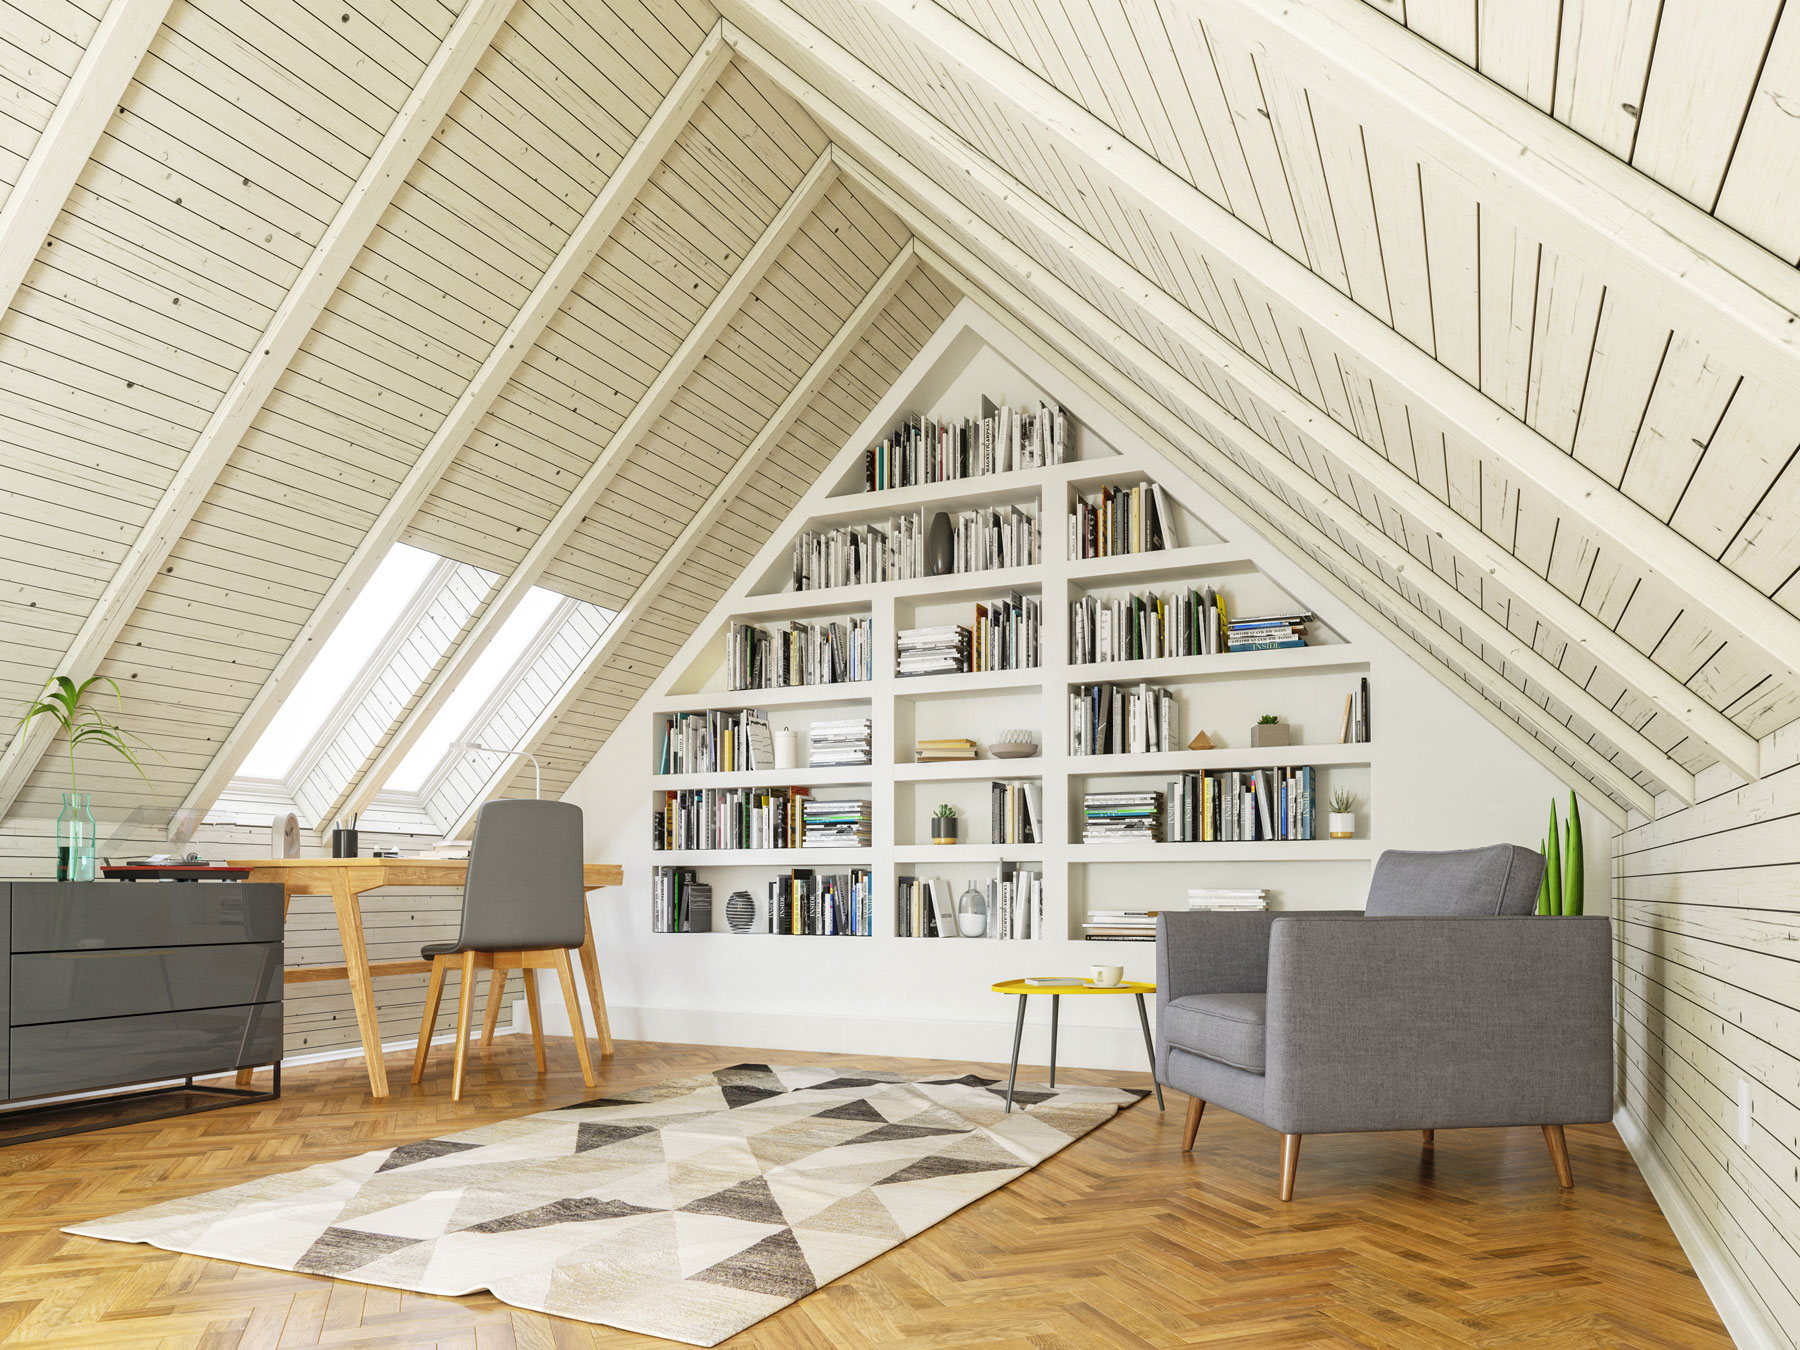 Una biblioteca domestica - una soffitta con molti libri